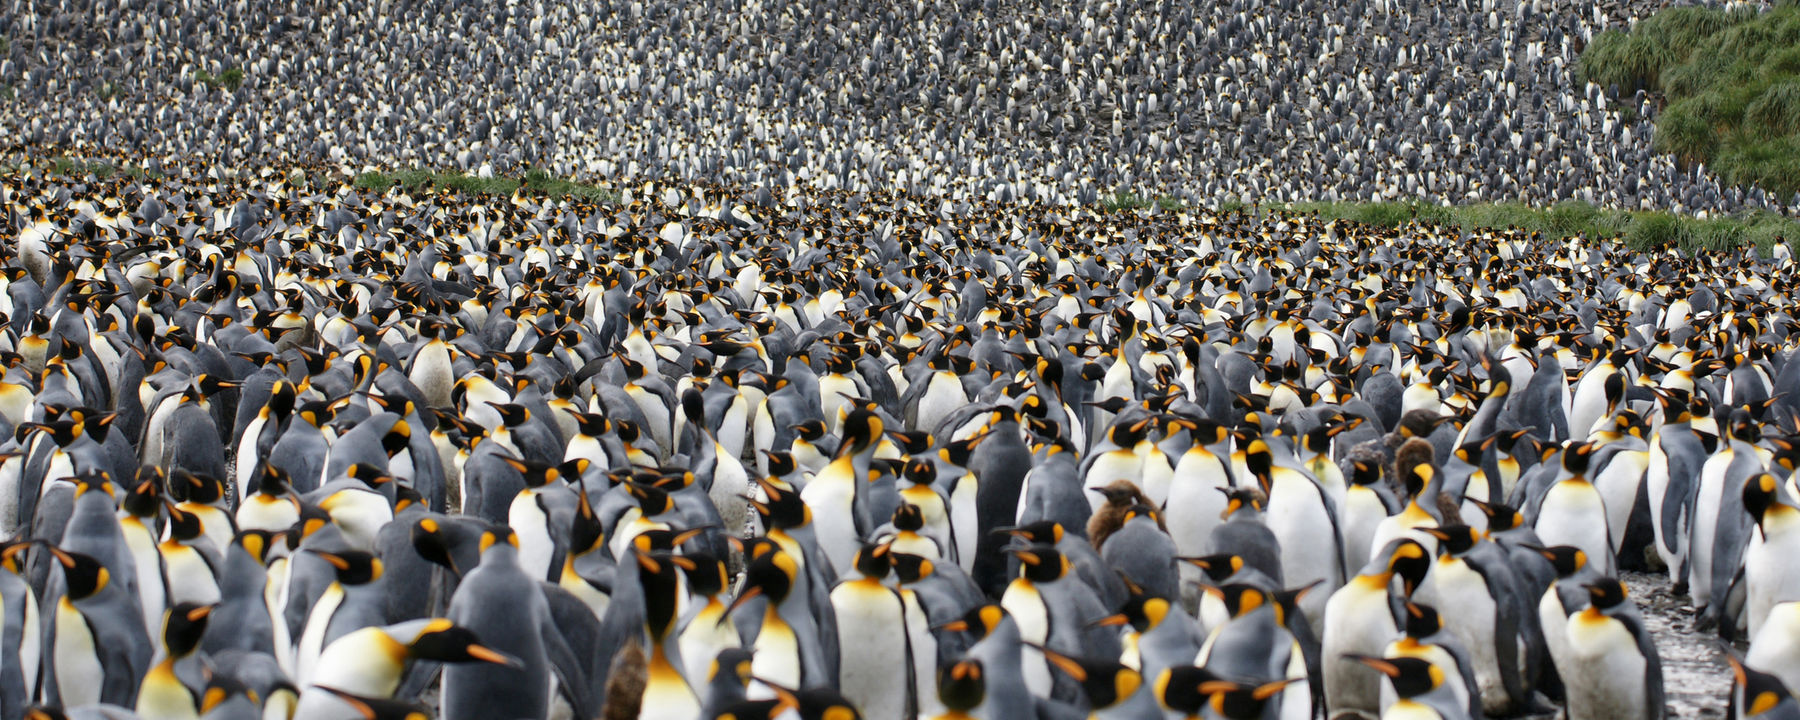 最大的王企鹅种群数量急剧下降